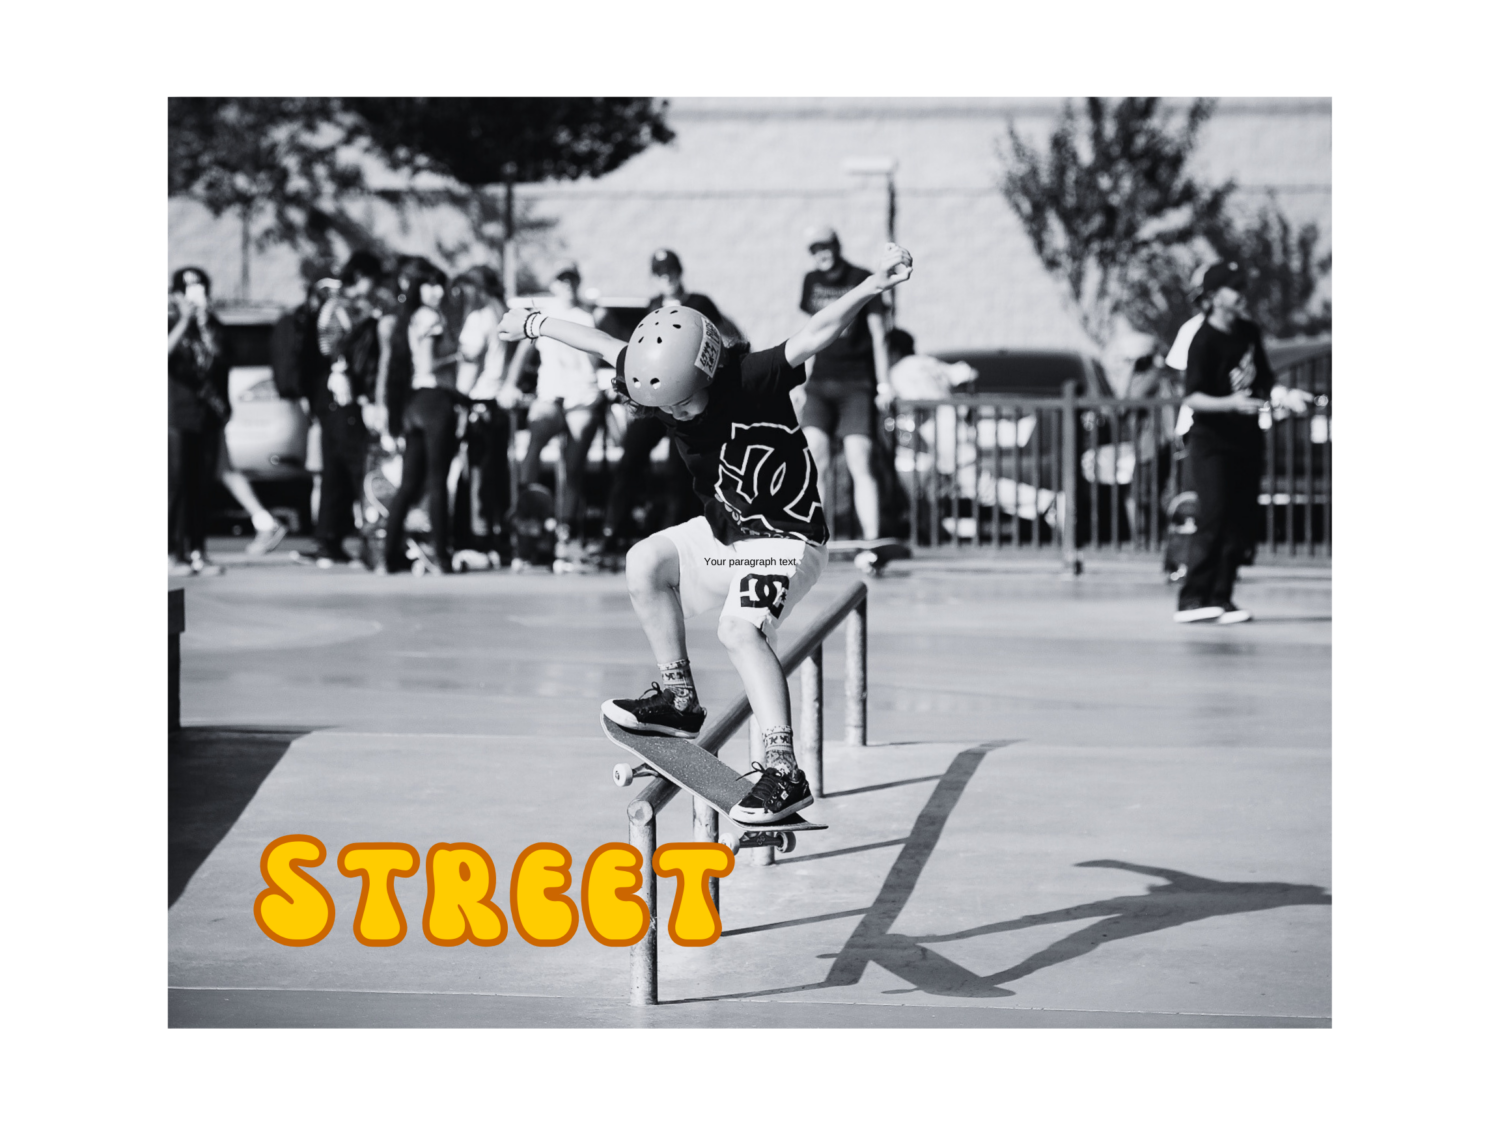 amateur skateboarding shop sponsorships Sex Images Hq